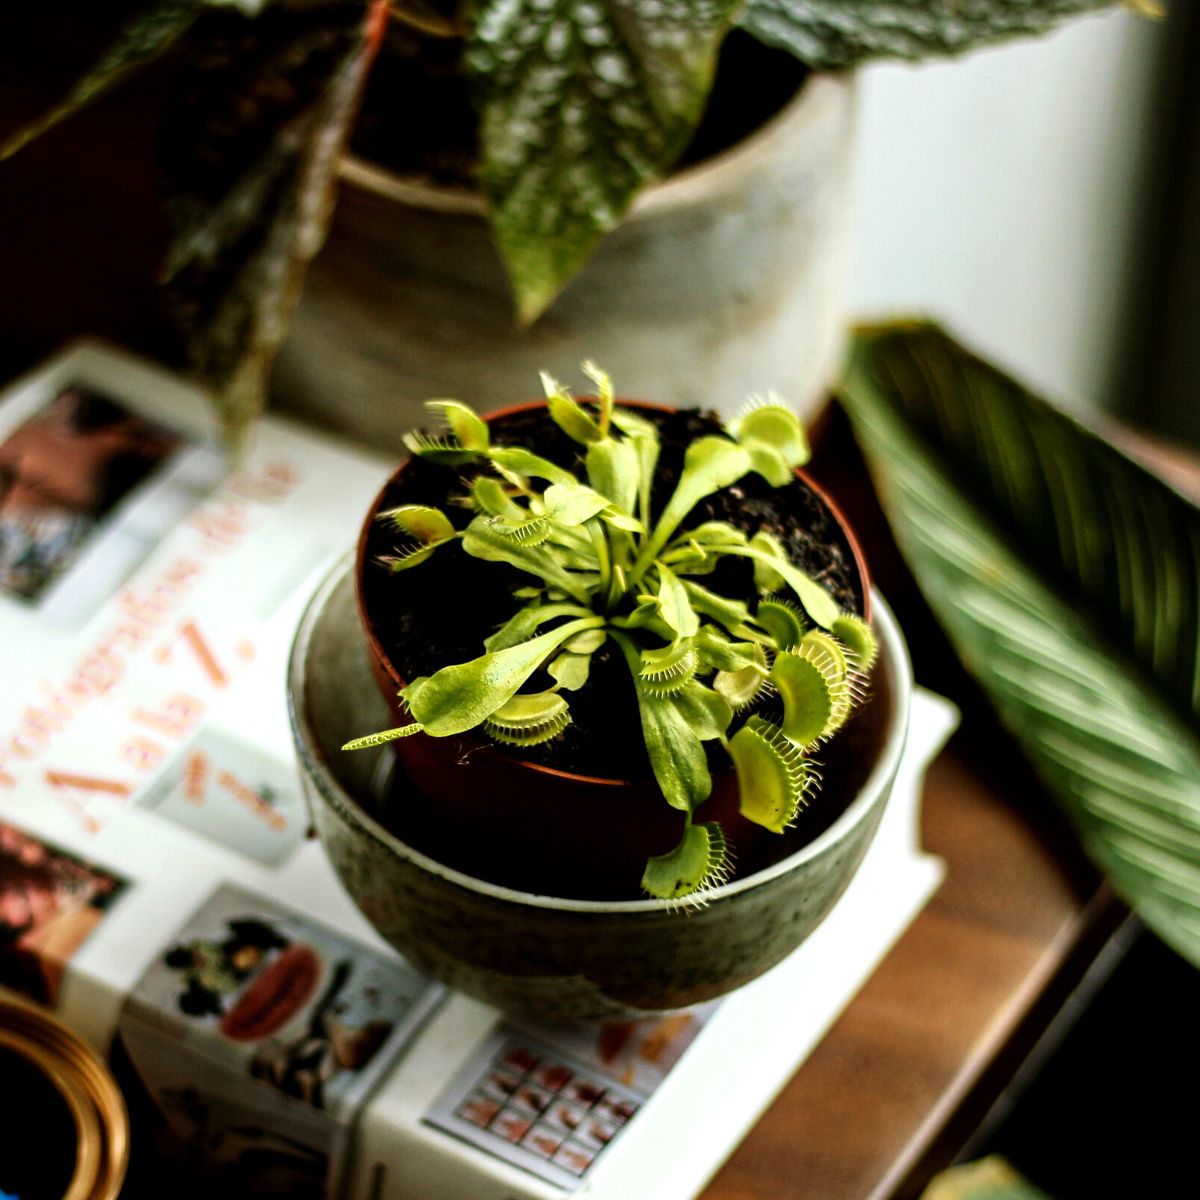 10 facts about the venus flytrap plant